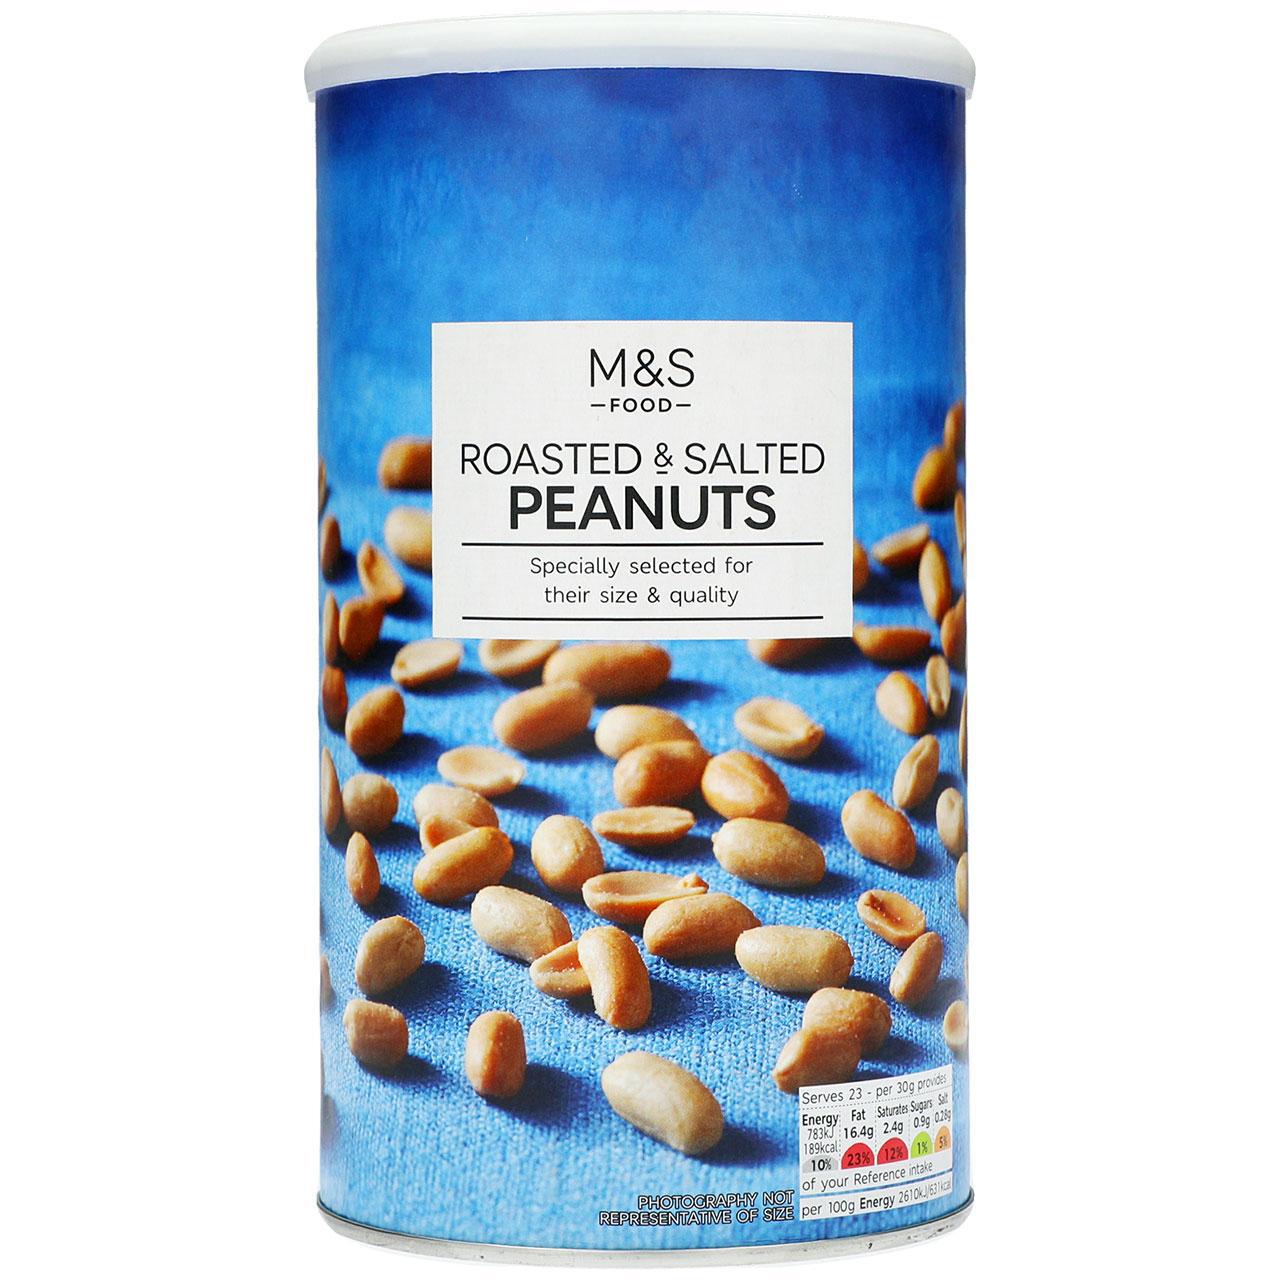 M&S Roasted & Salted Peanuts 690g